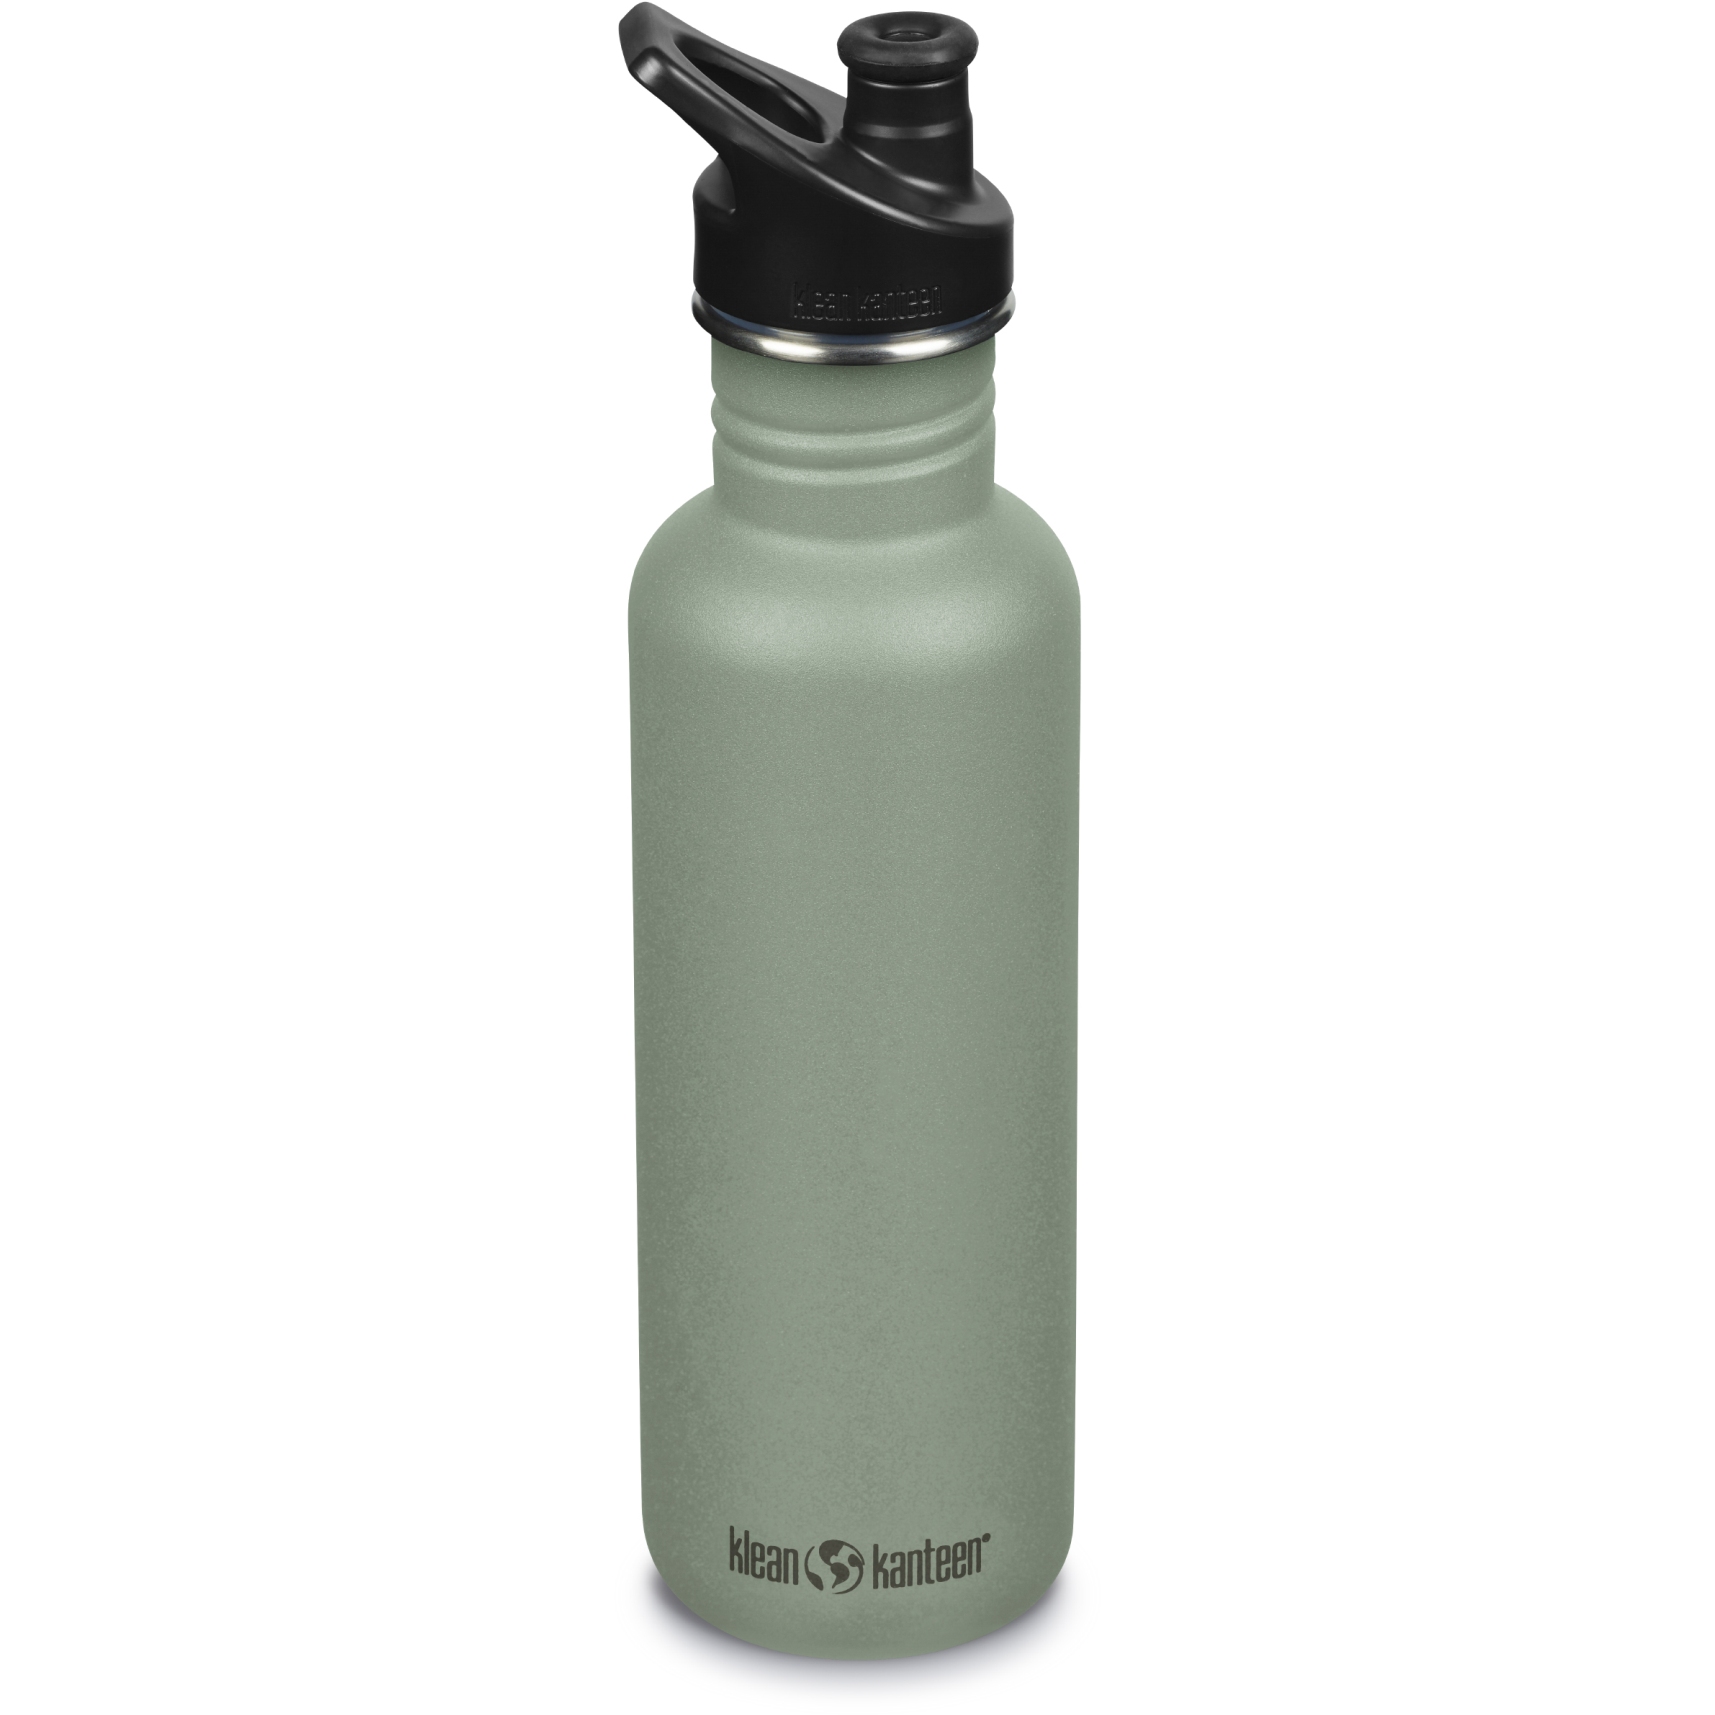 Productfoto van Klean Kanteen Classic Drinkfles met Sport Cap - 800 ml - sea spray